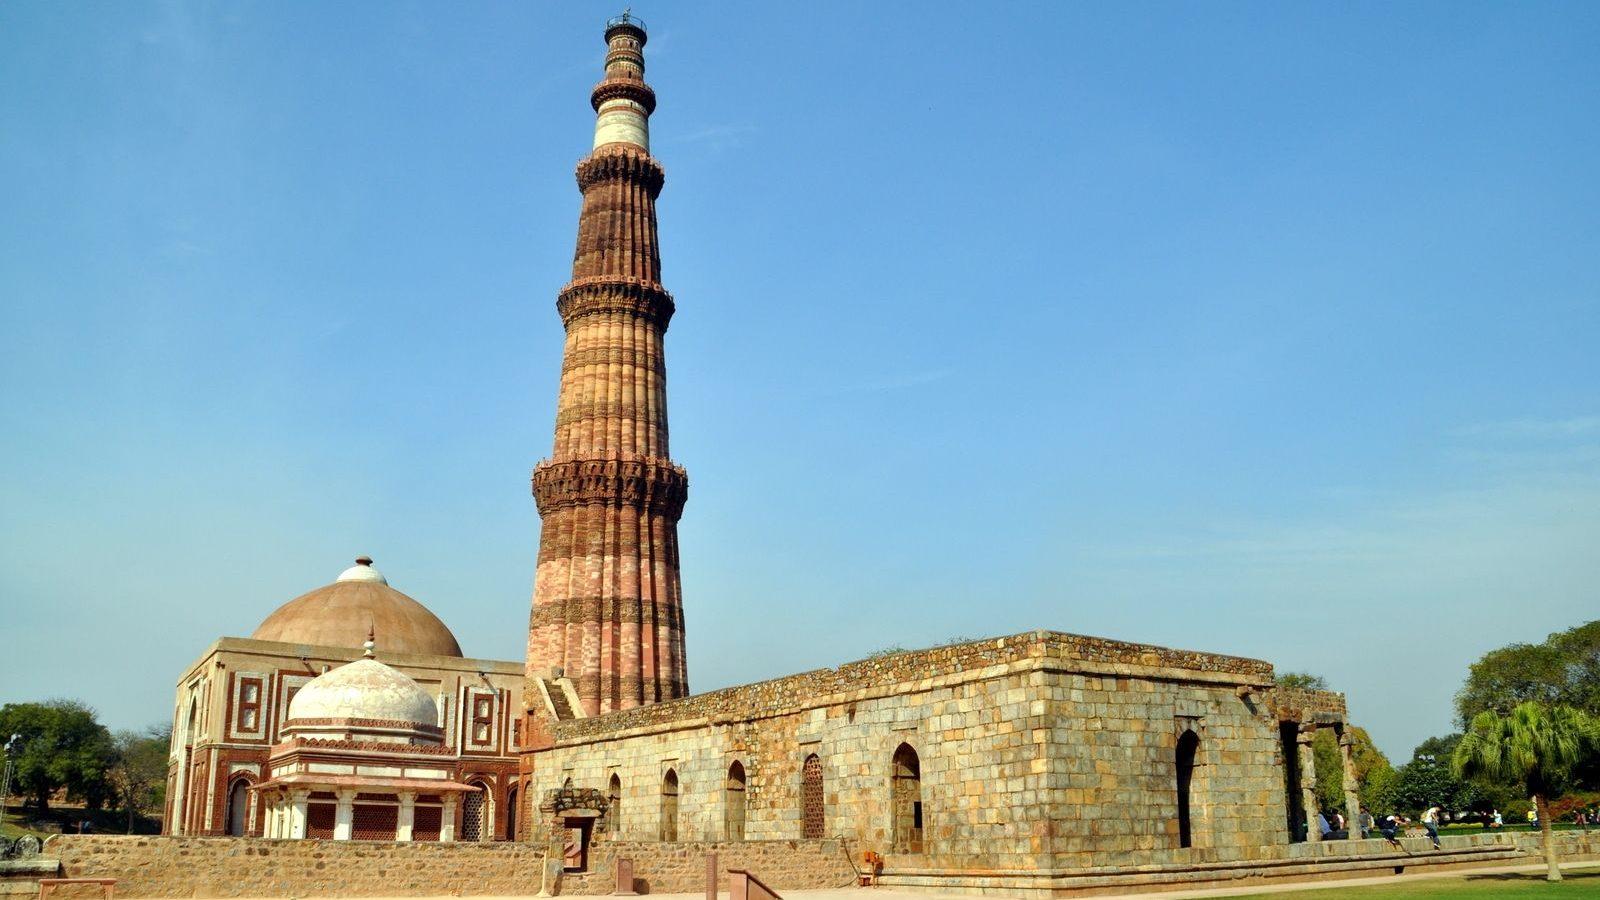 HD Wallpaper Of The Qutub Minar Monument In New Delhi